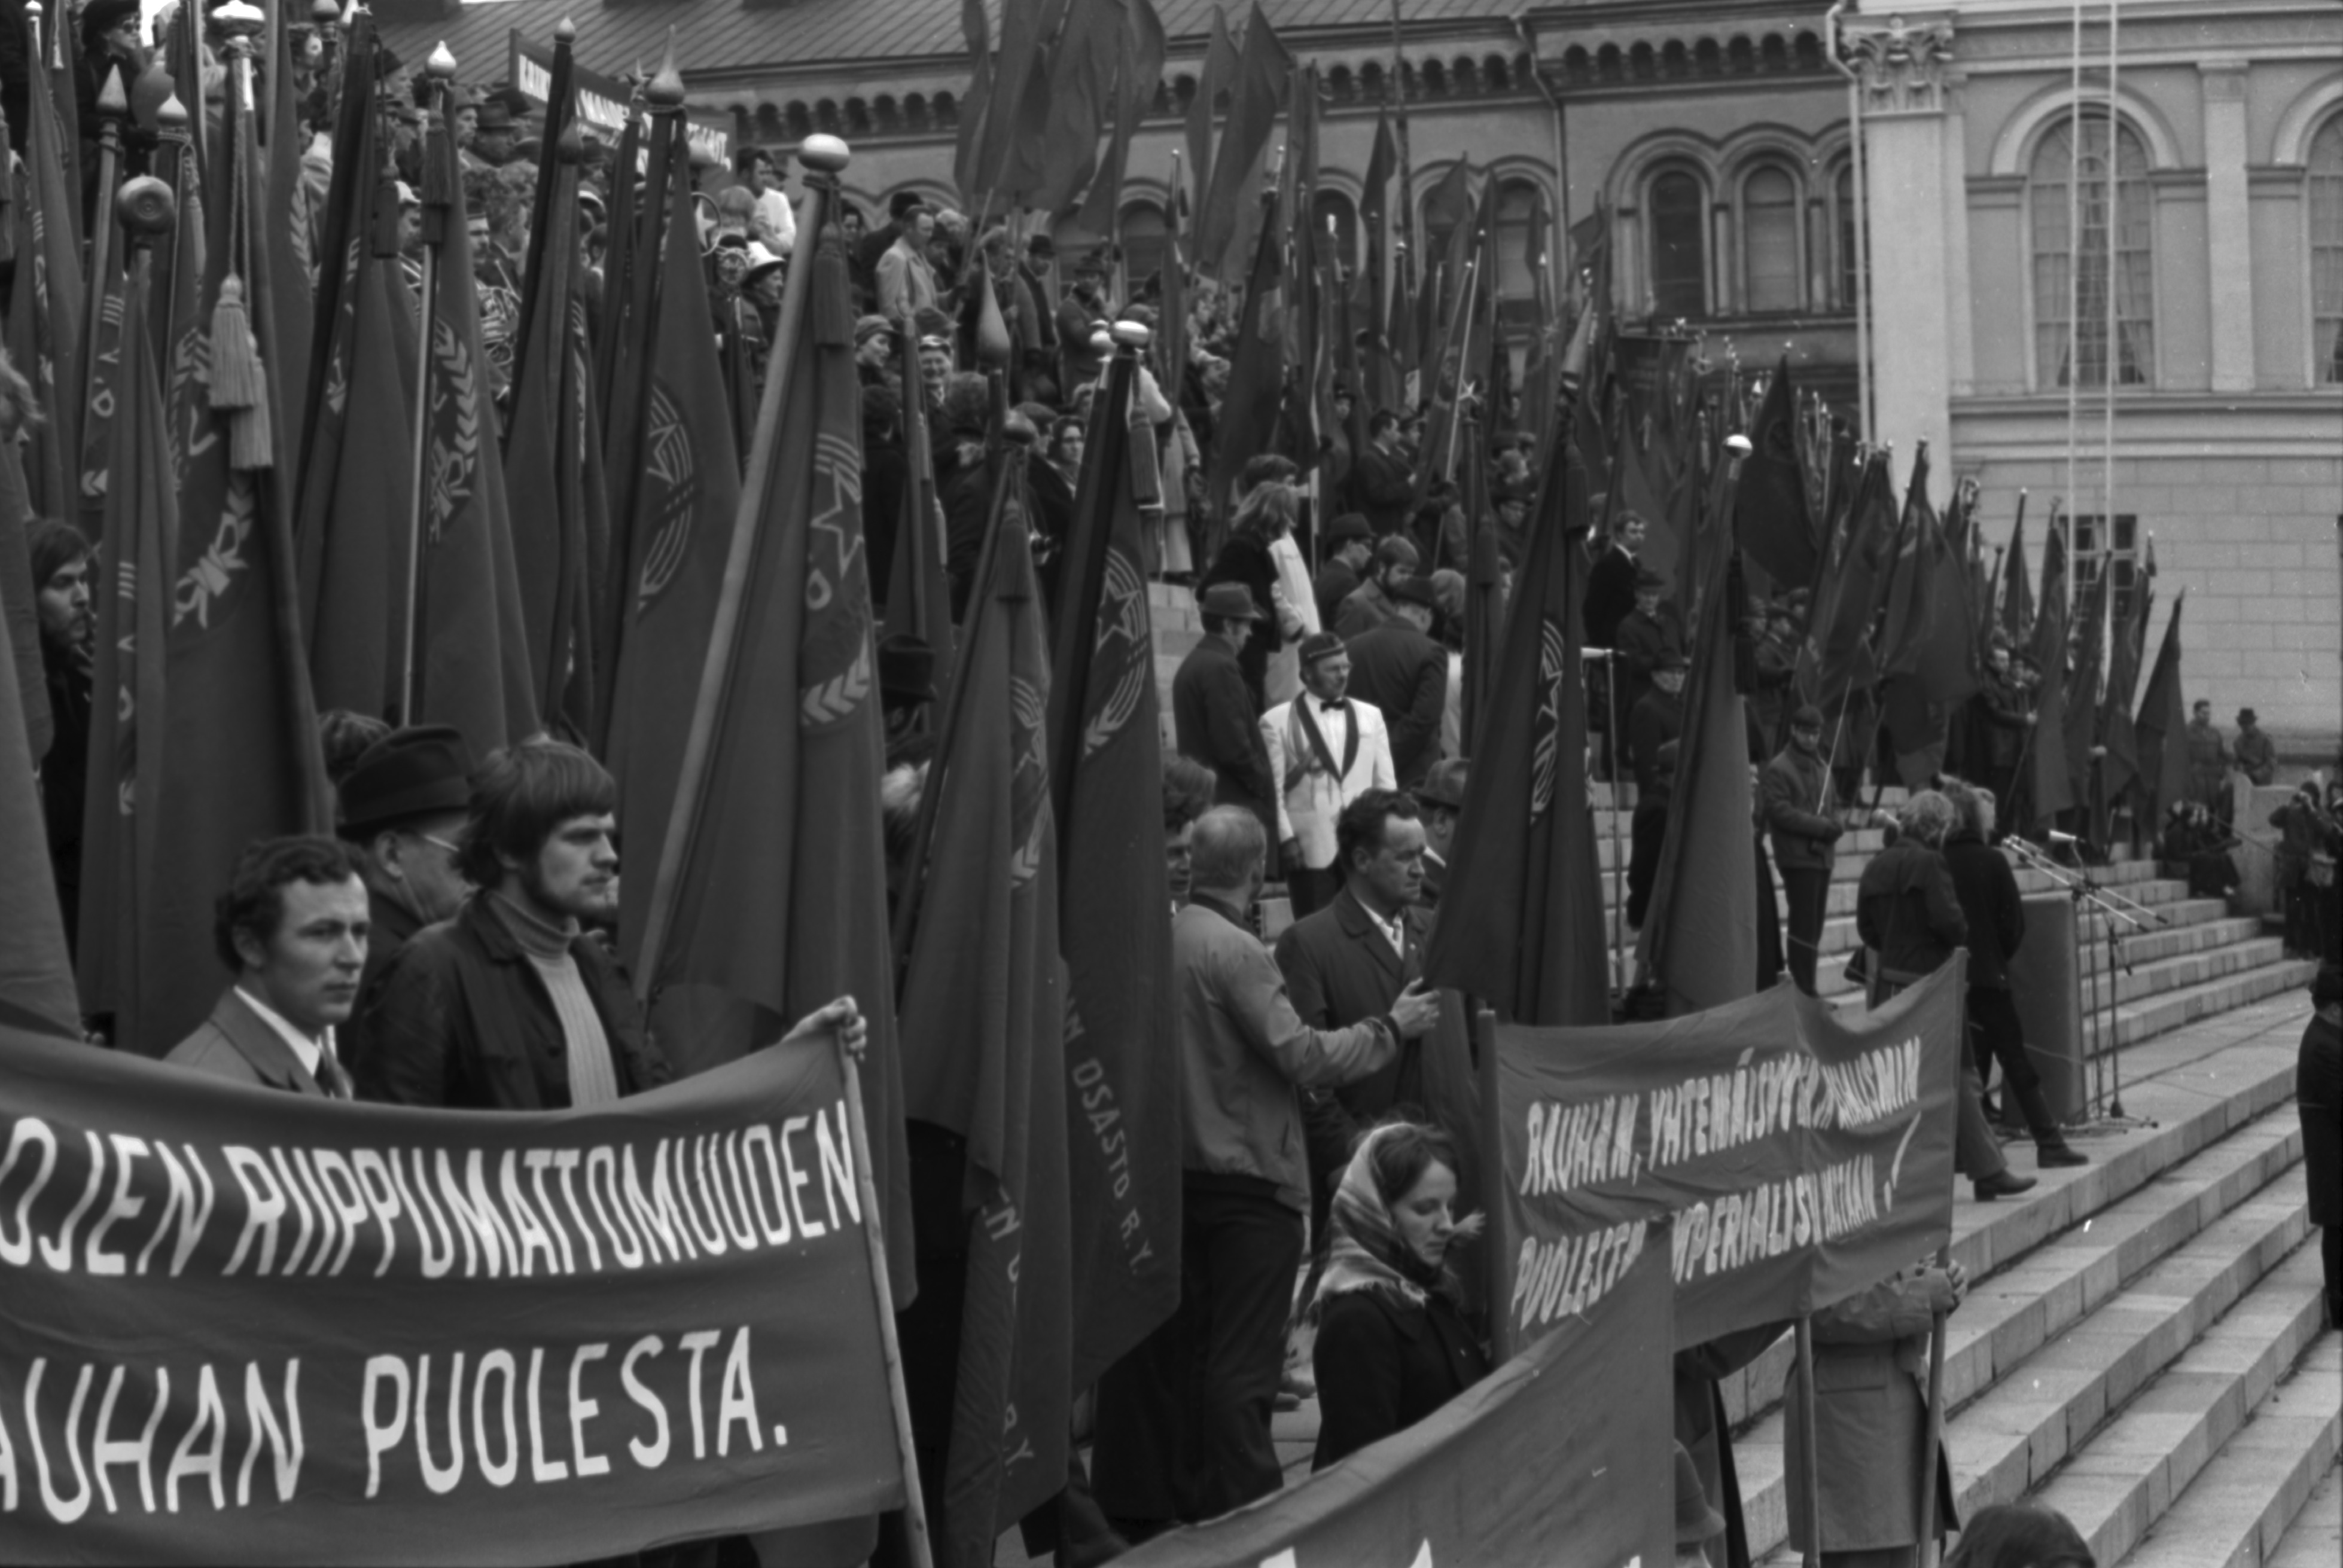 Hallituskatu 7. Työväen vappujuhlaan osallistuvia ihmisiä banderolleineen ja lippuineen Tuomiokirkon portailla 1.5.1972.